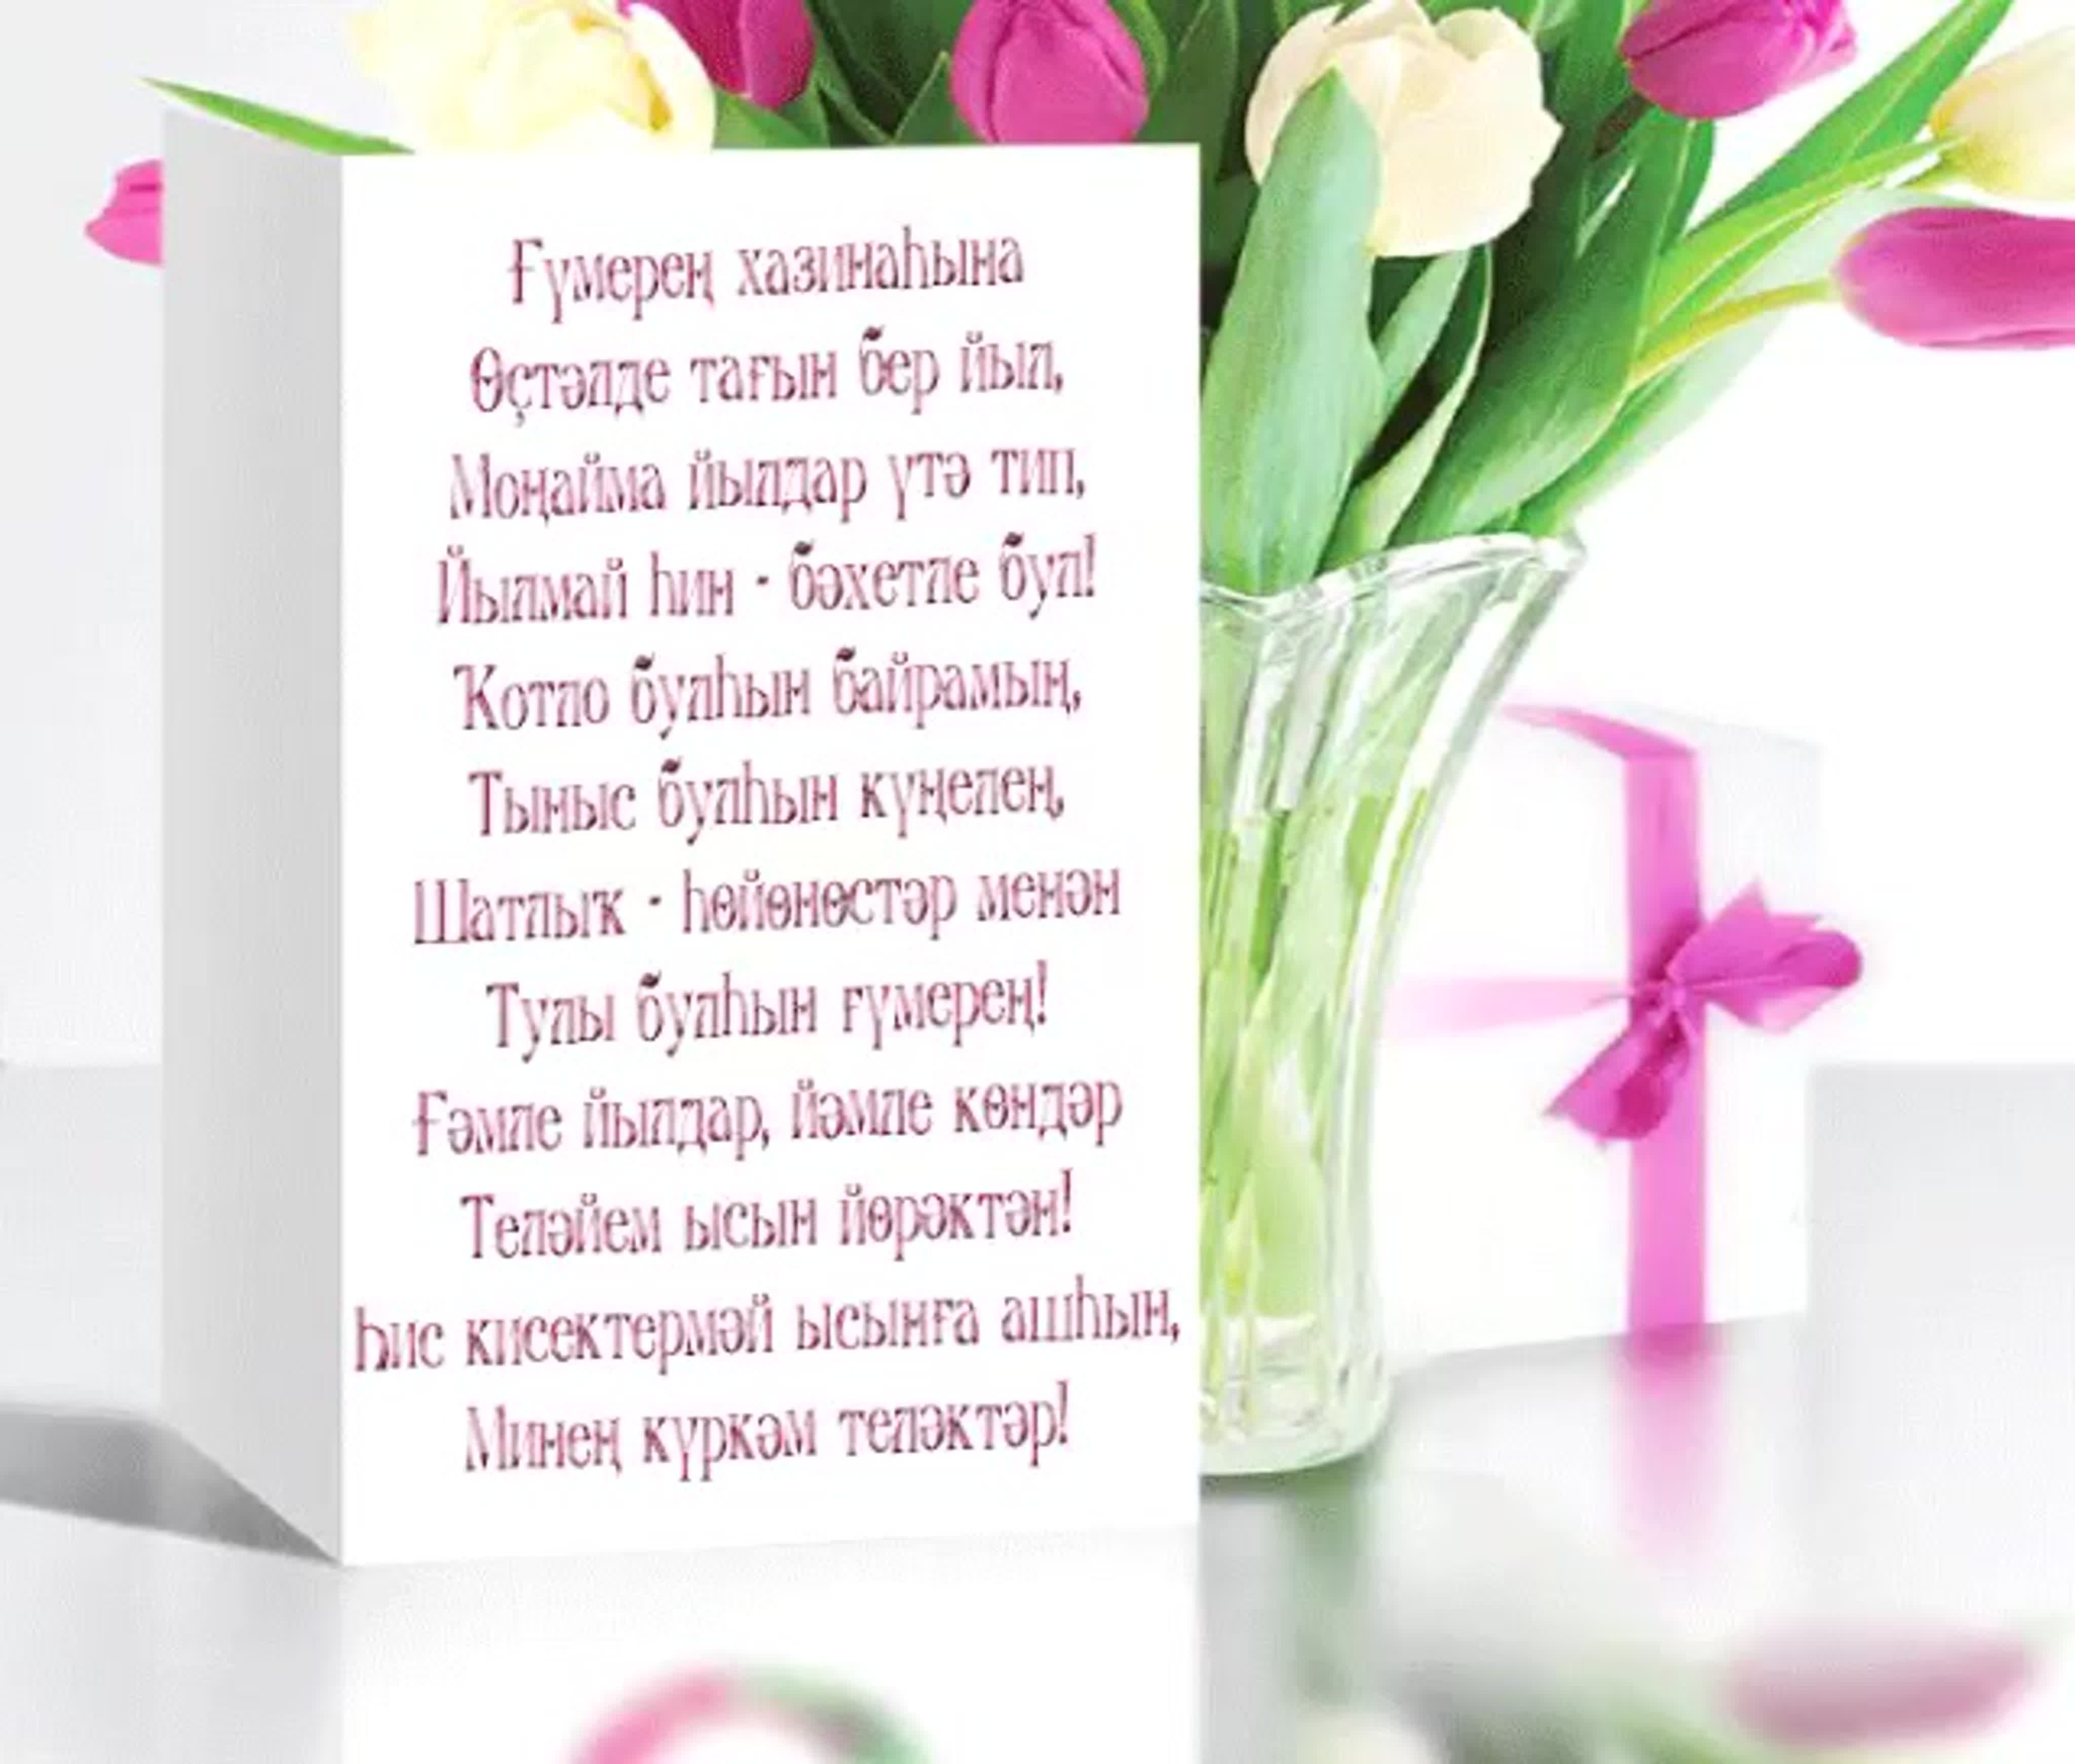 Поздравление на башкирском. Поздравления с днём рождения на башкирском языке. Поздравления с днём рождения женщине на башкирском языке. Пожелания с днём рождения на башкирском. Поздравления башкирском языке женщине.